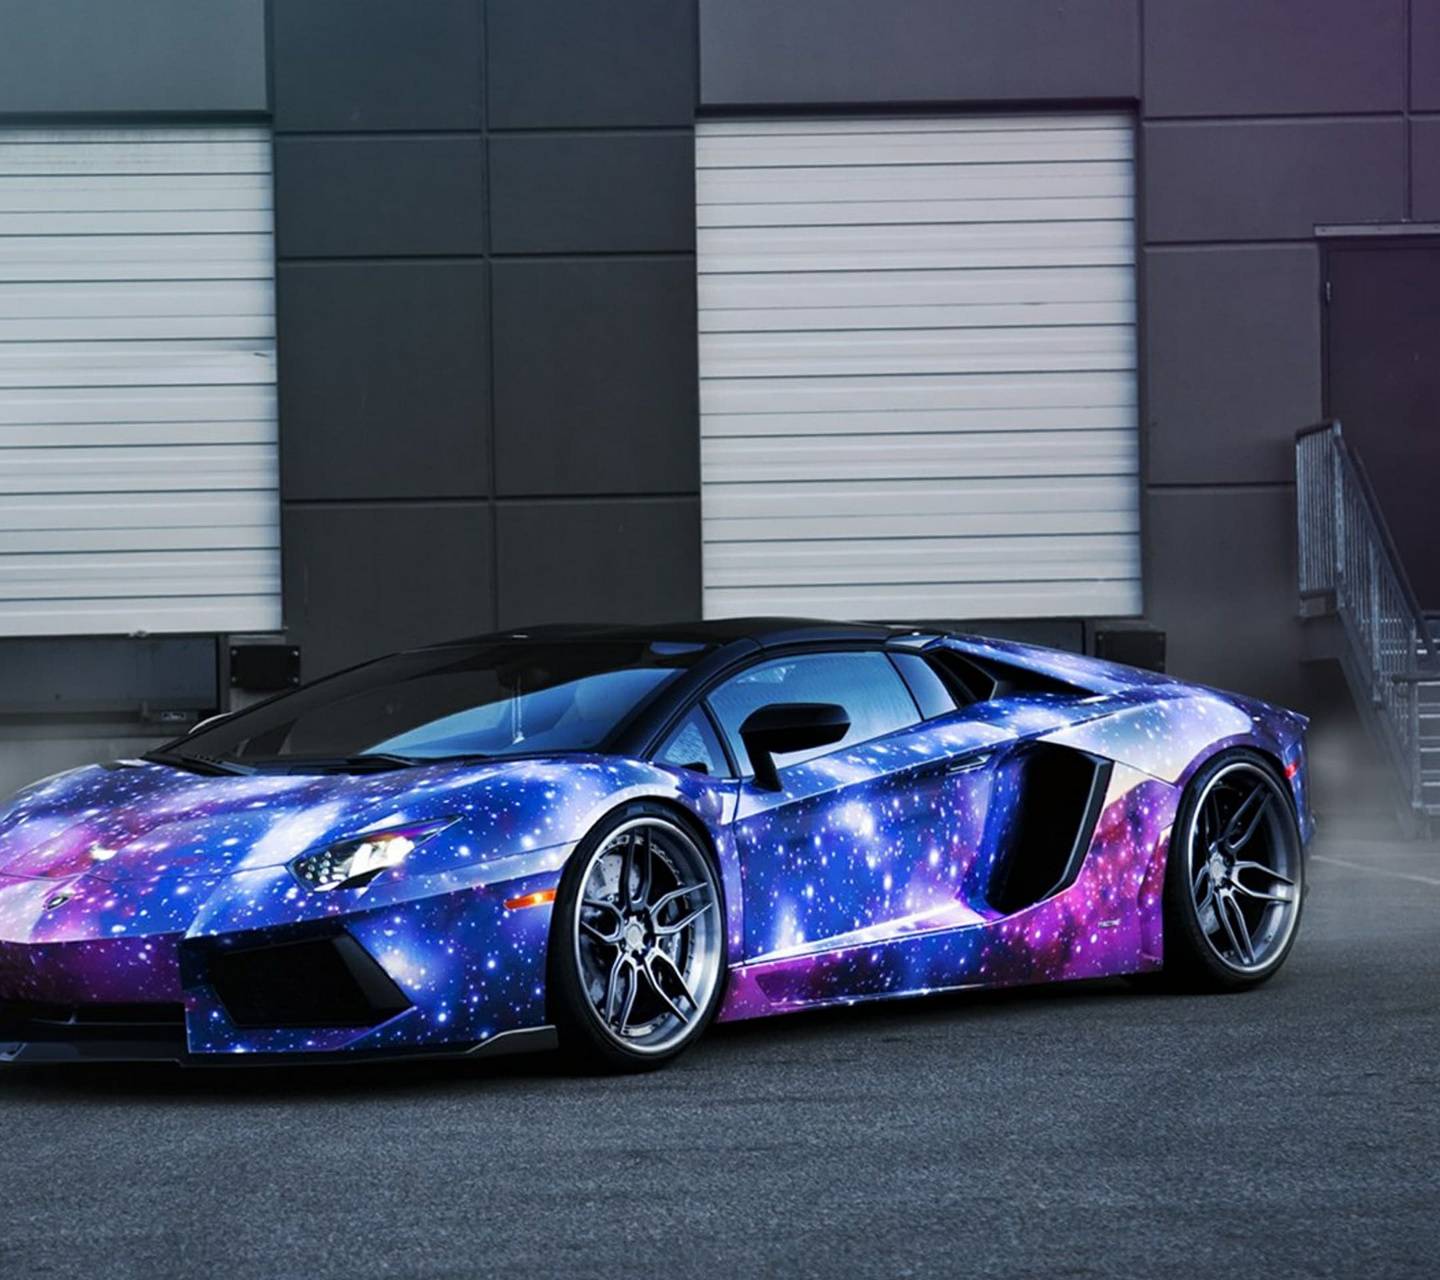 Với những người yêu thích sự trang trọng và đẳng cấp của siêu xe Lamborghini, bộ sưu tập Lamborghini Galaxy Wallpapers chắc chắn là một lựa chọn không thể bỏ qua. Tận hưởng vẻ đẹp tuyệt vời của những chiếc xe đỉnh cao trong không gian sao mênh mông.